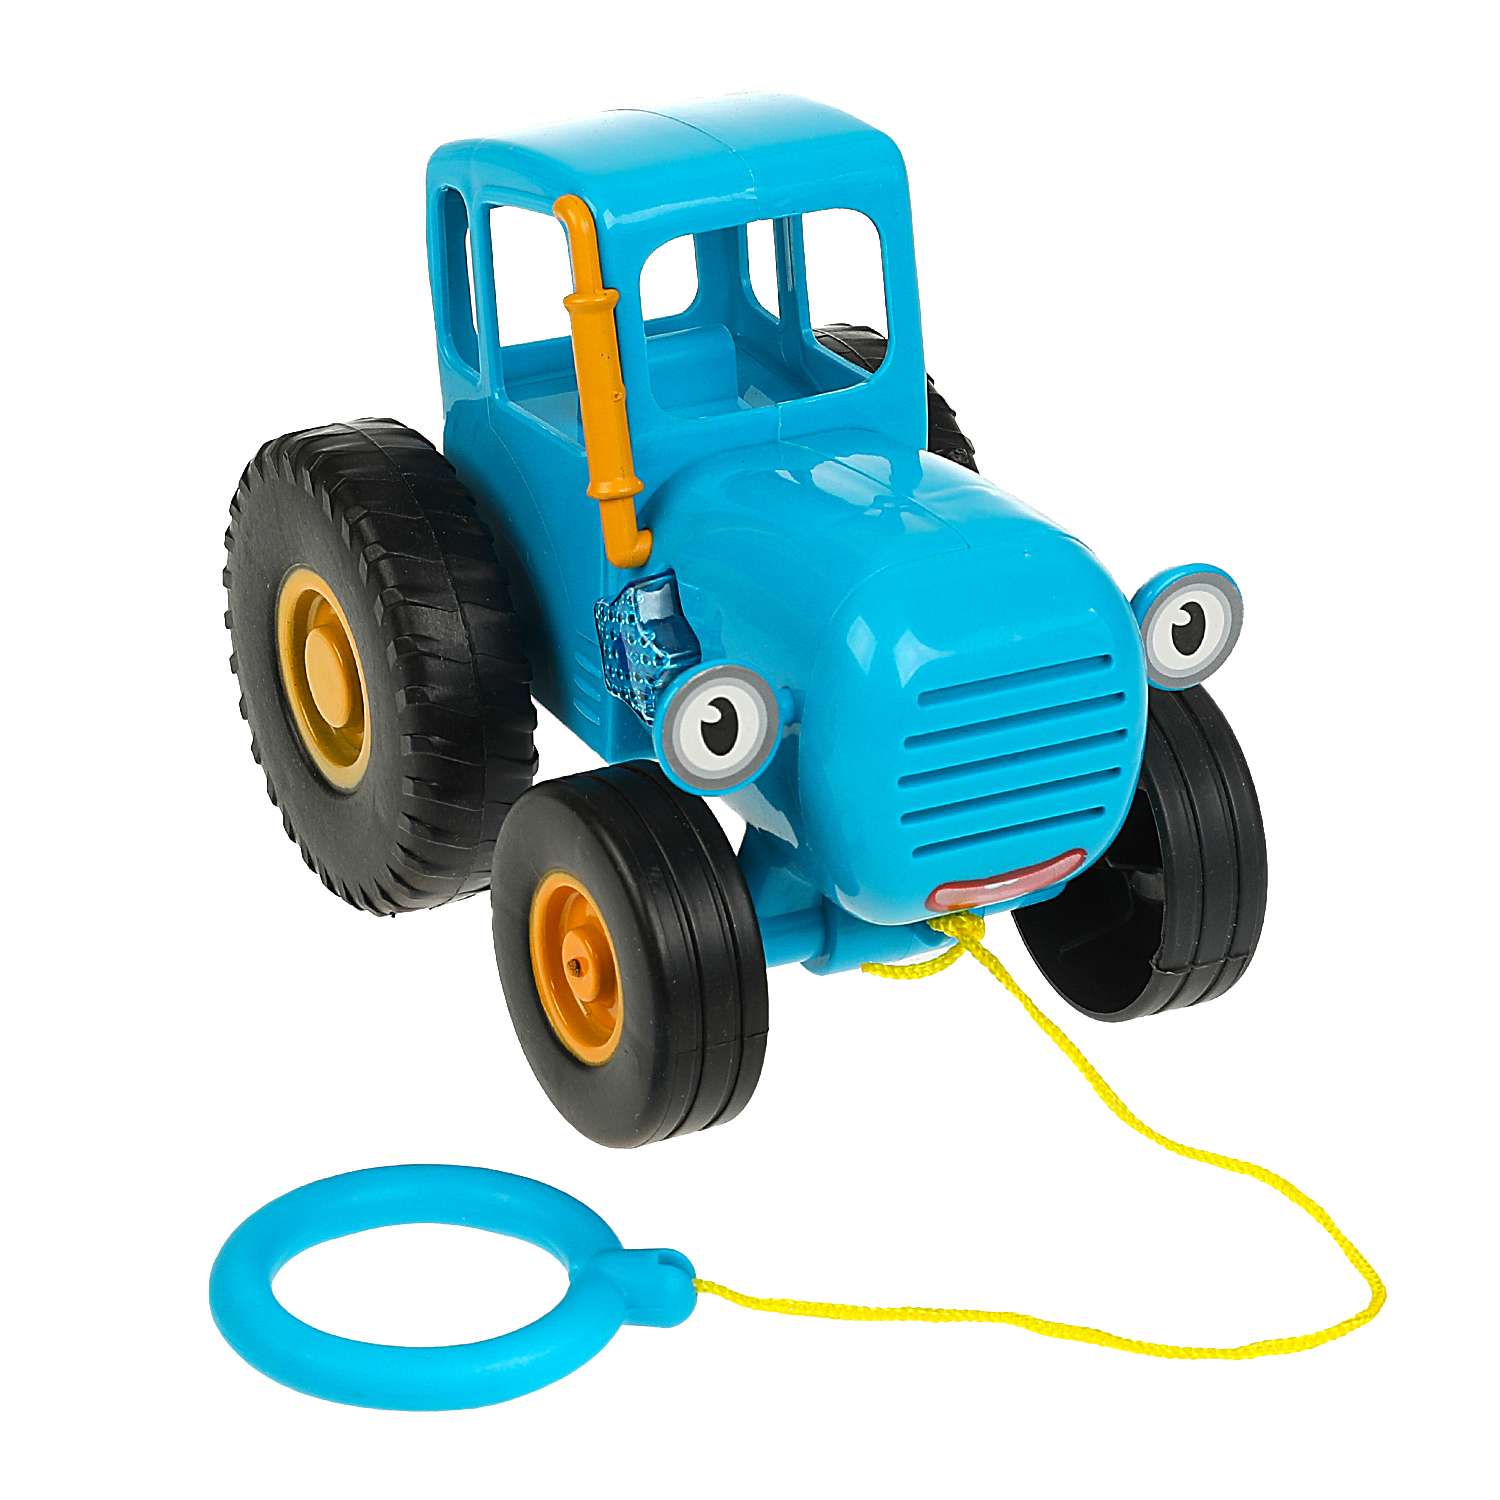 Игрушка Умка Каталка Синий трактор 359111 - фото 1